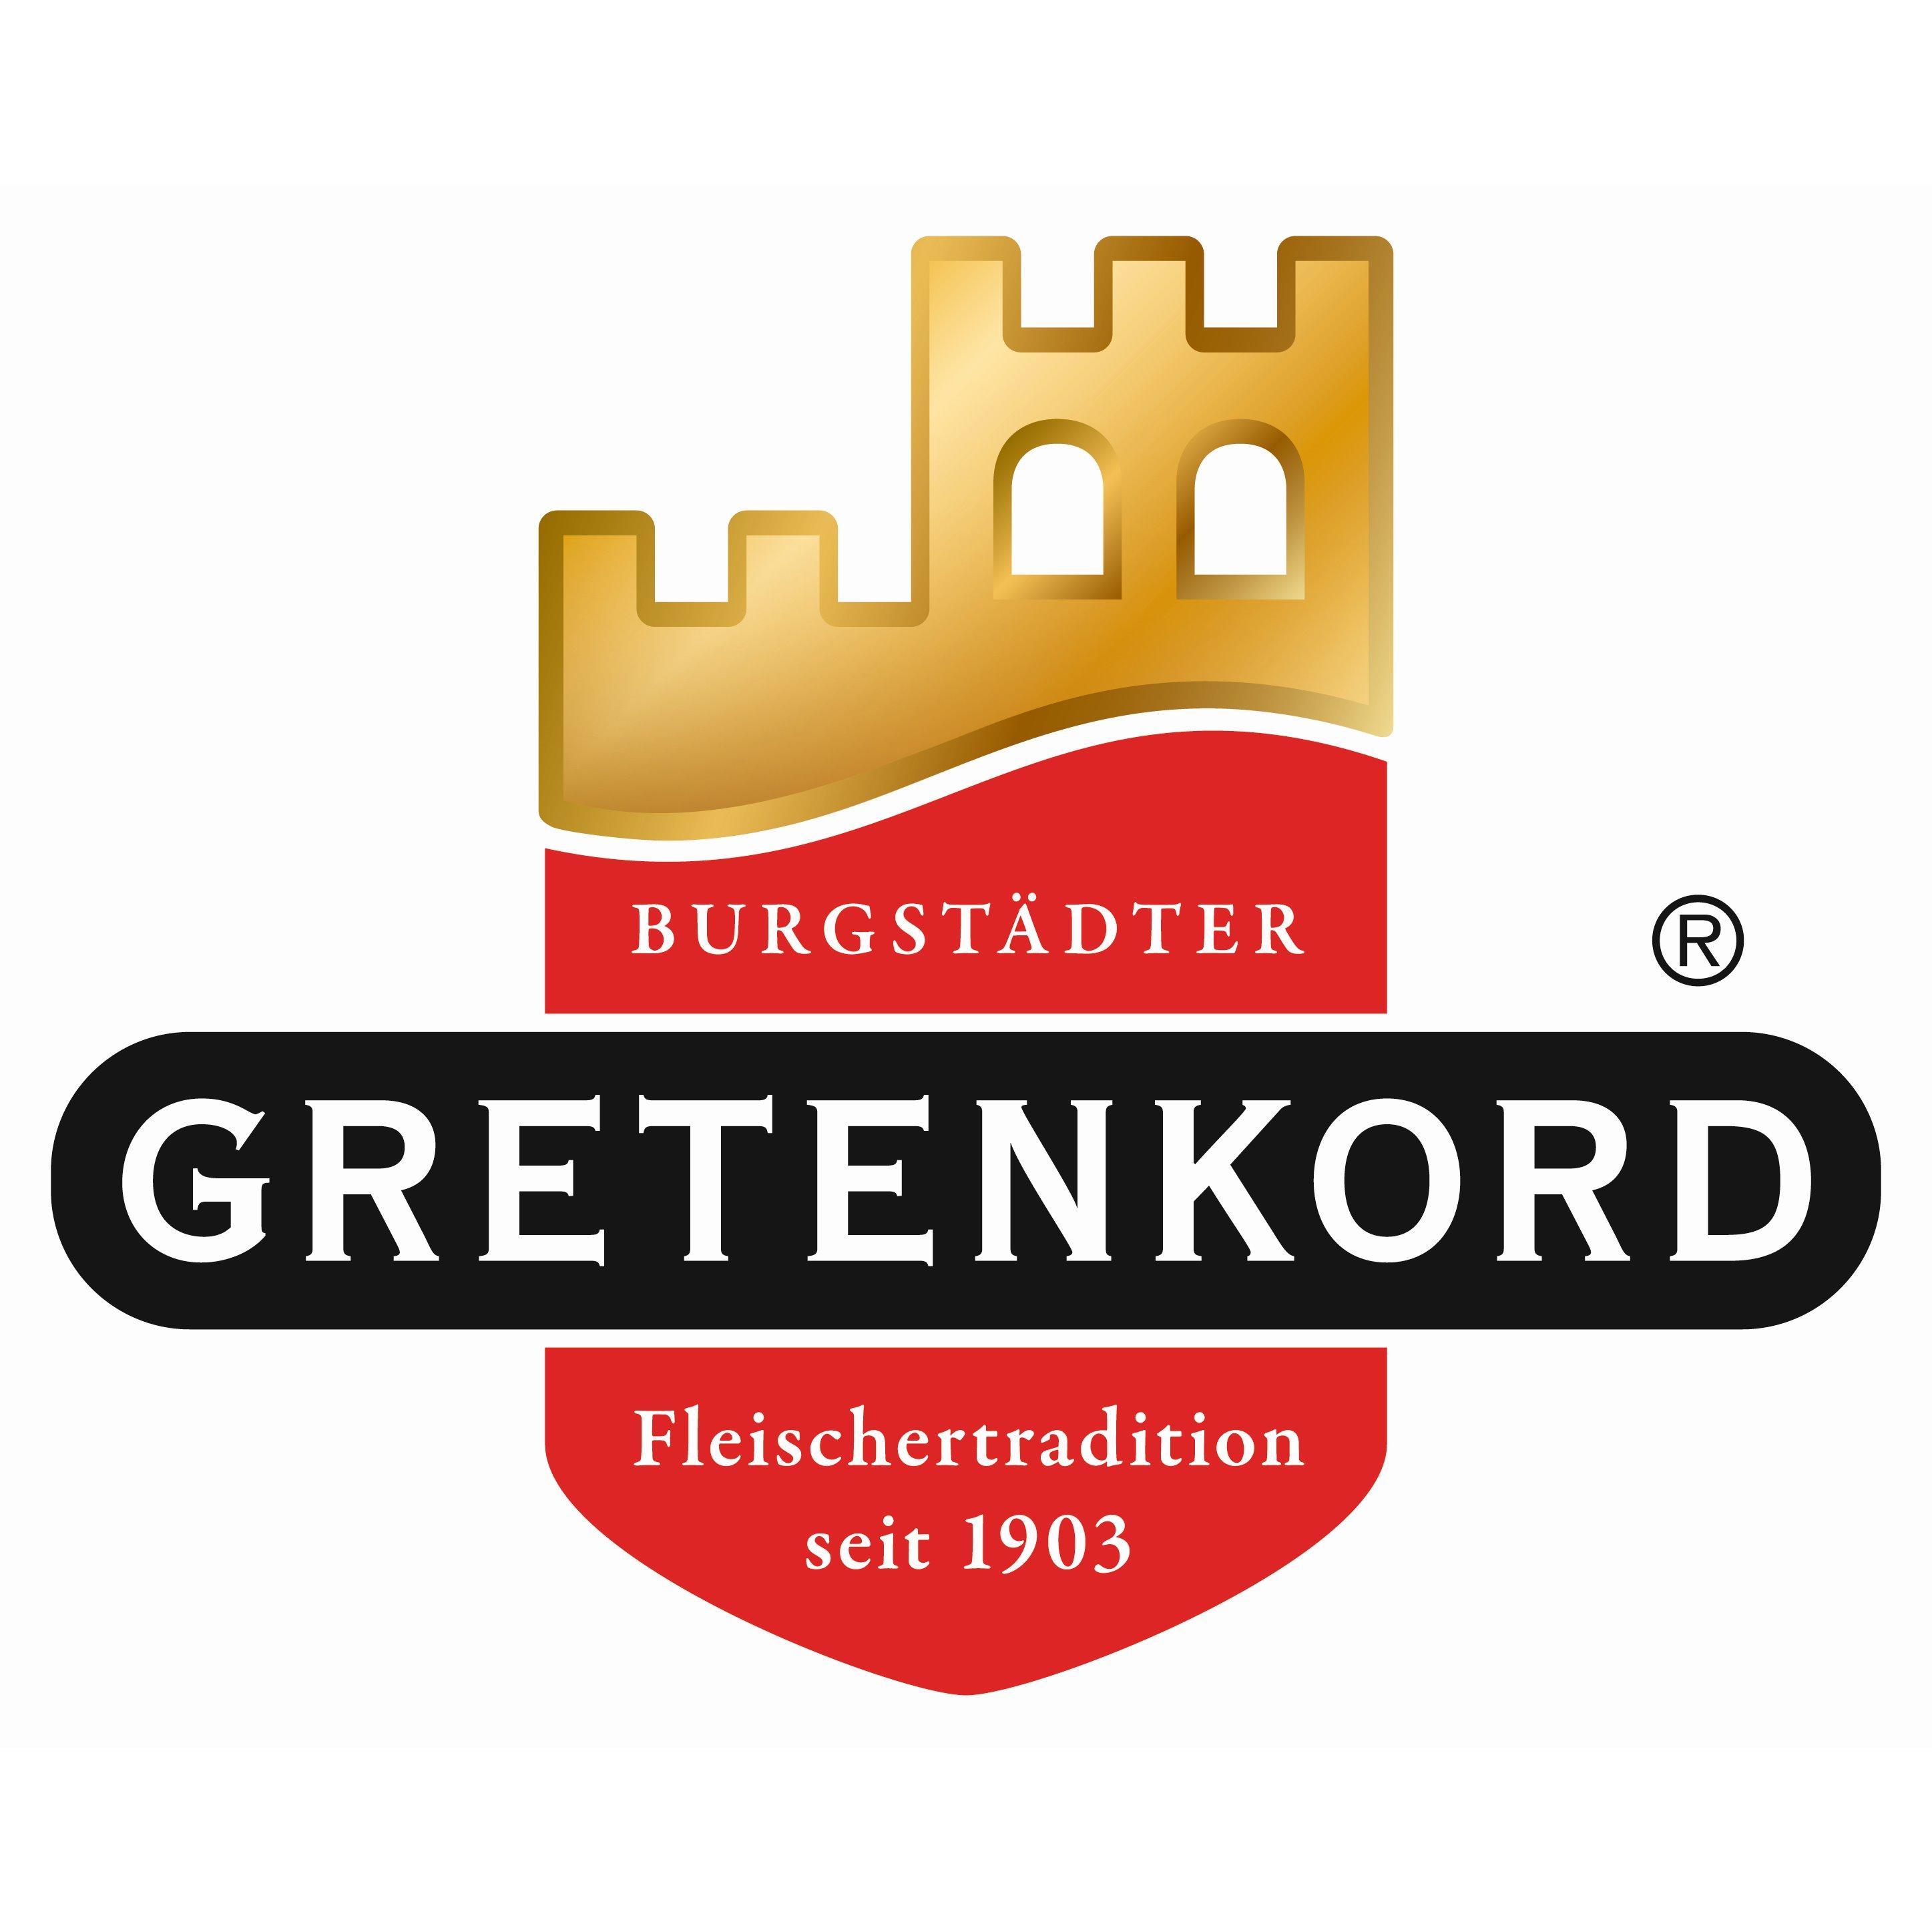 Fleischerei Gretenkord in Schmölln in Thüringen - Logo